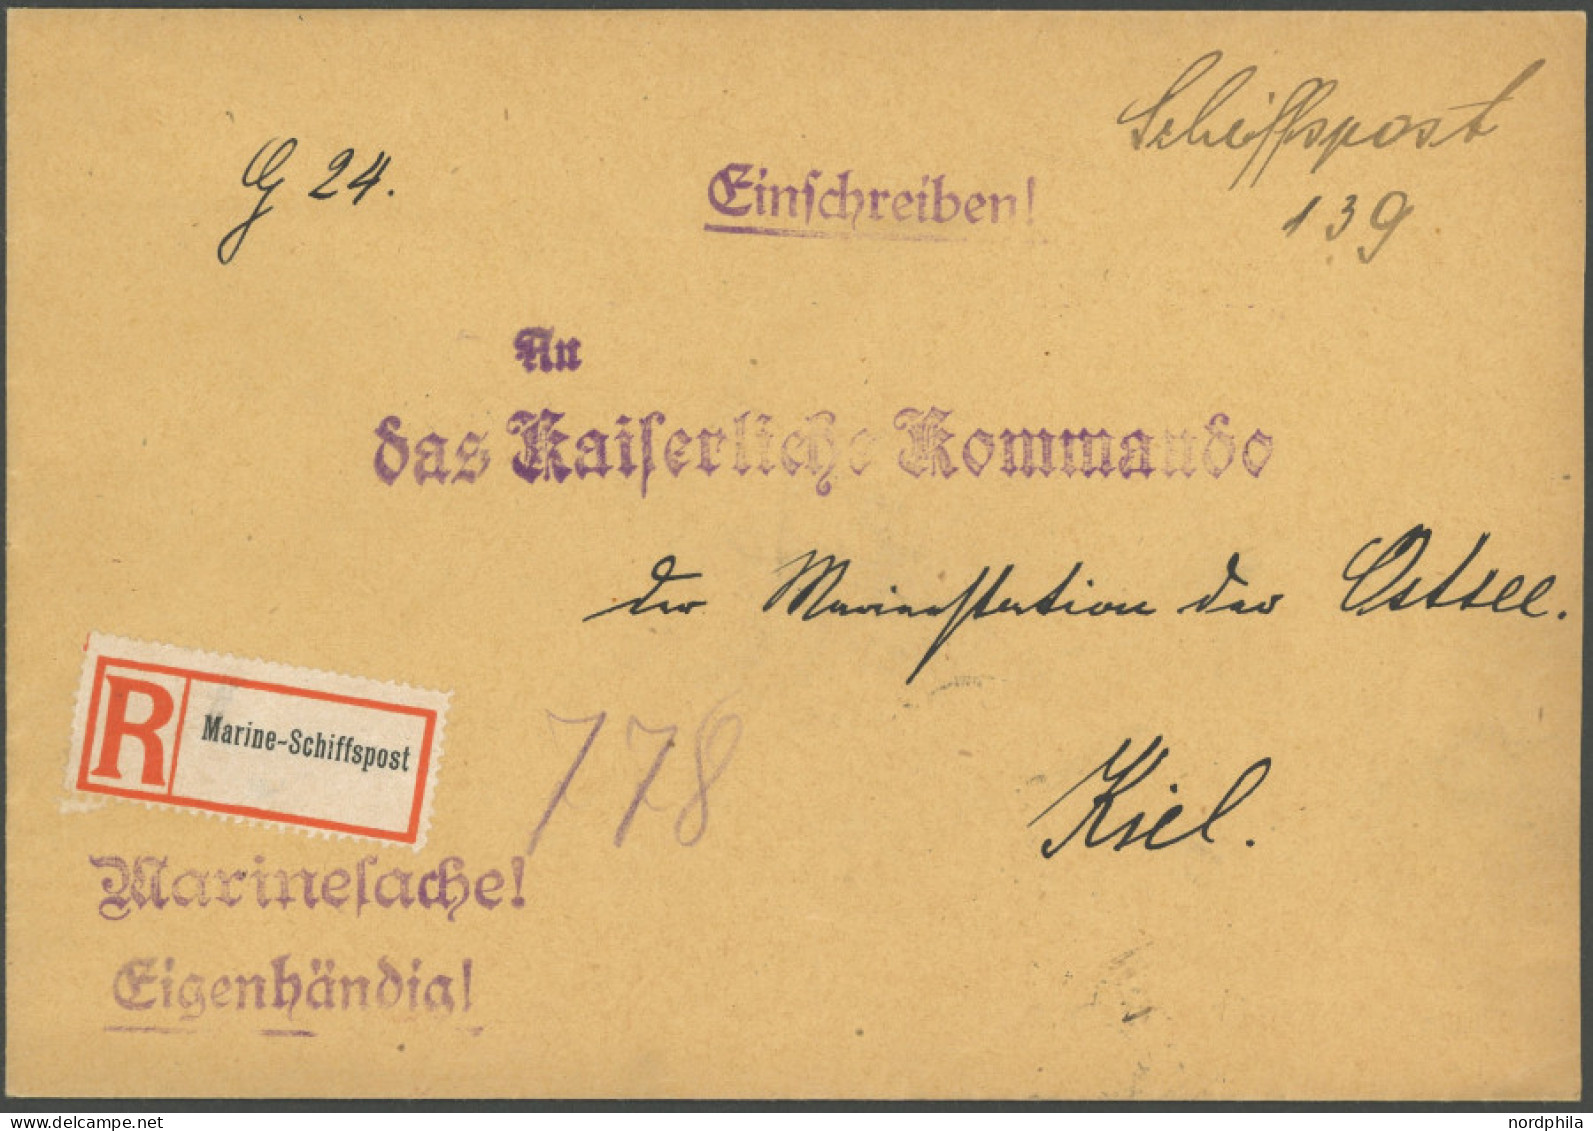 MSP VON 1914 - 1918 SMS PRINZREGENT LUITPOLD, 18.1.1917, Feldpost-Einschreibbrief, Handschriftlich Schiffspost 139, Rück - Maritime